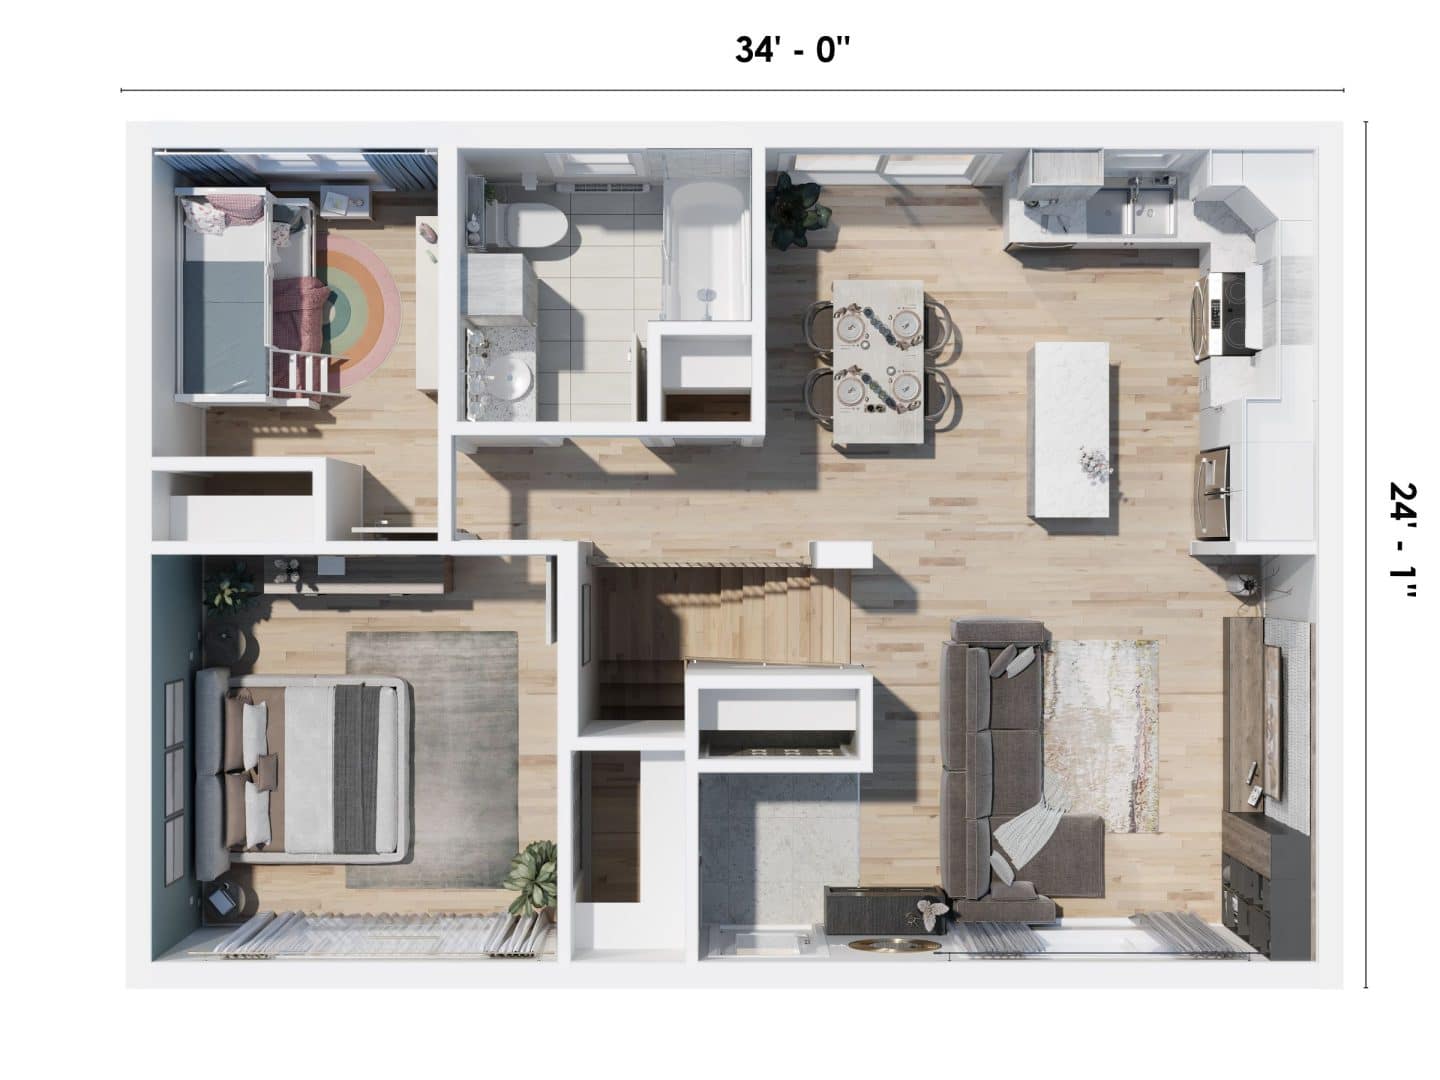 Modèle Sopo est une maison plain-pied de style contemporain. Vue du plan 3D.